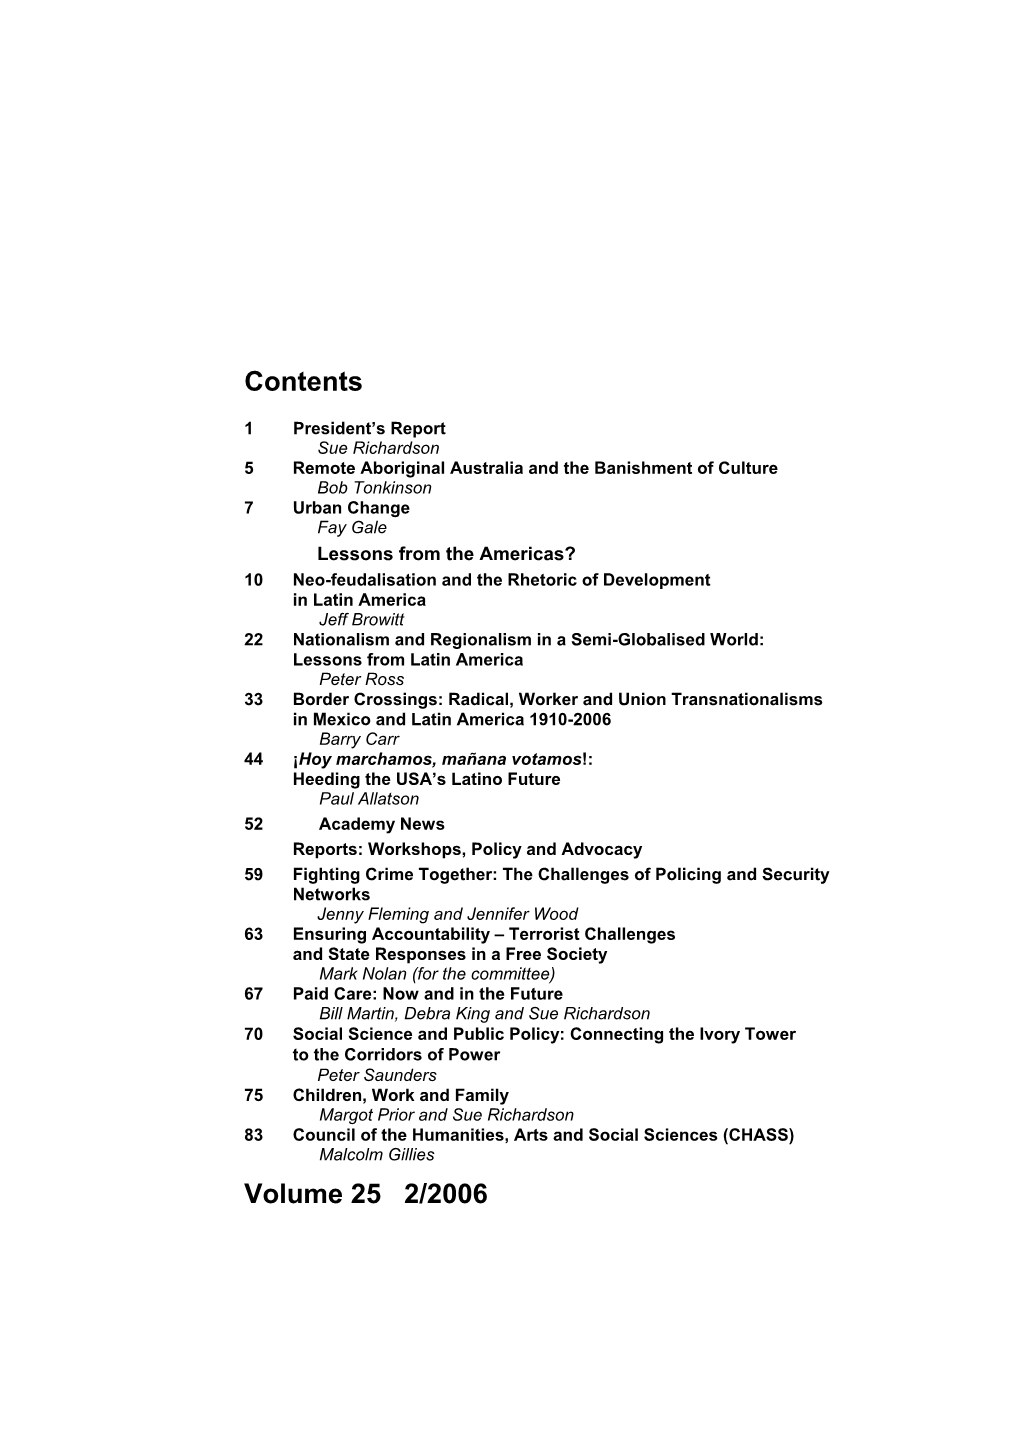 Contents Volume 25 2/2006